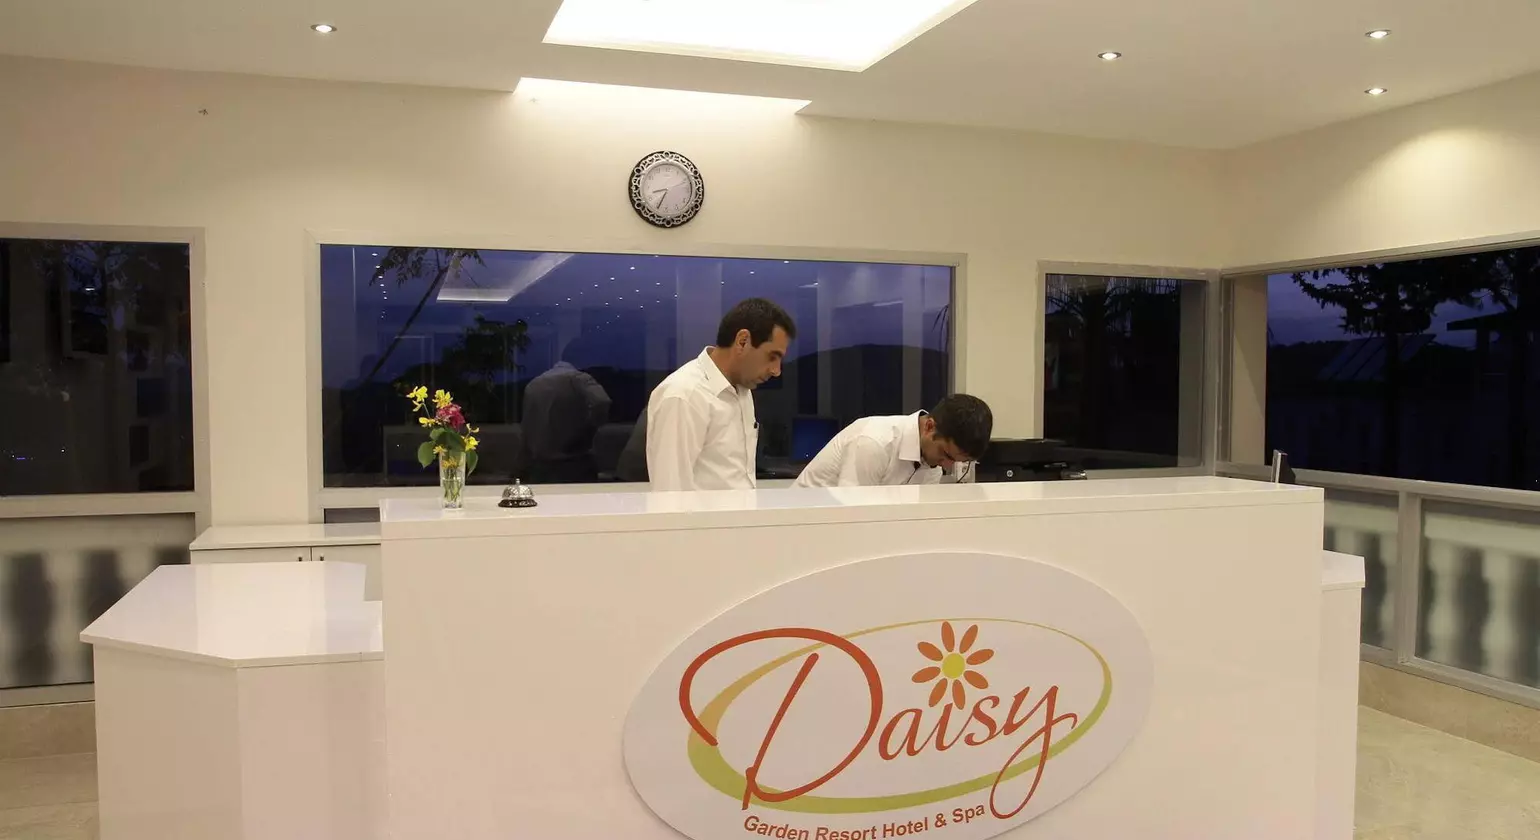 Daisy Garden Resort Hotel